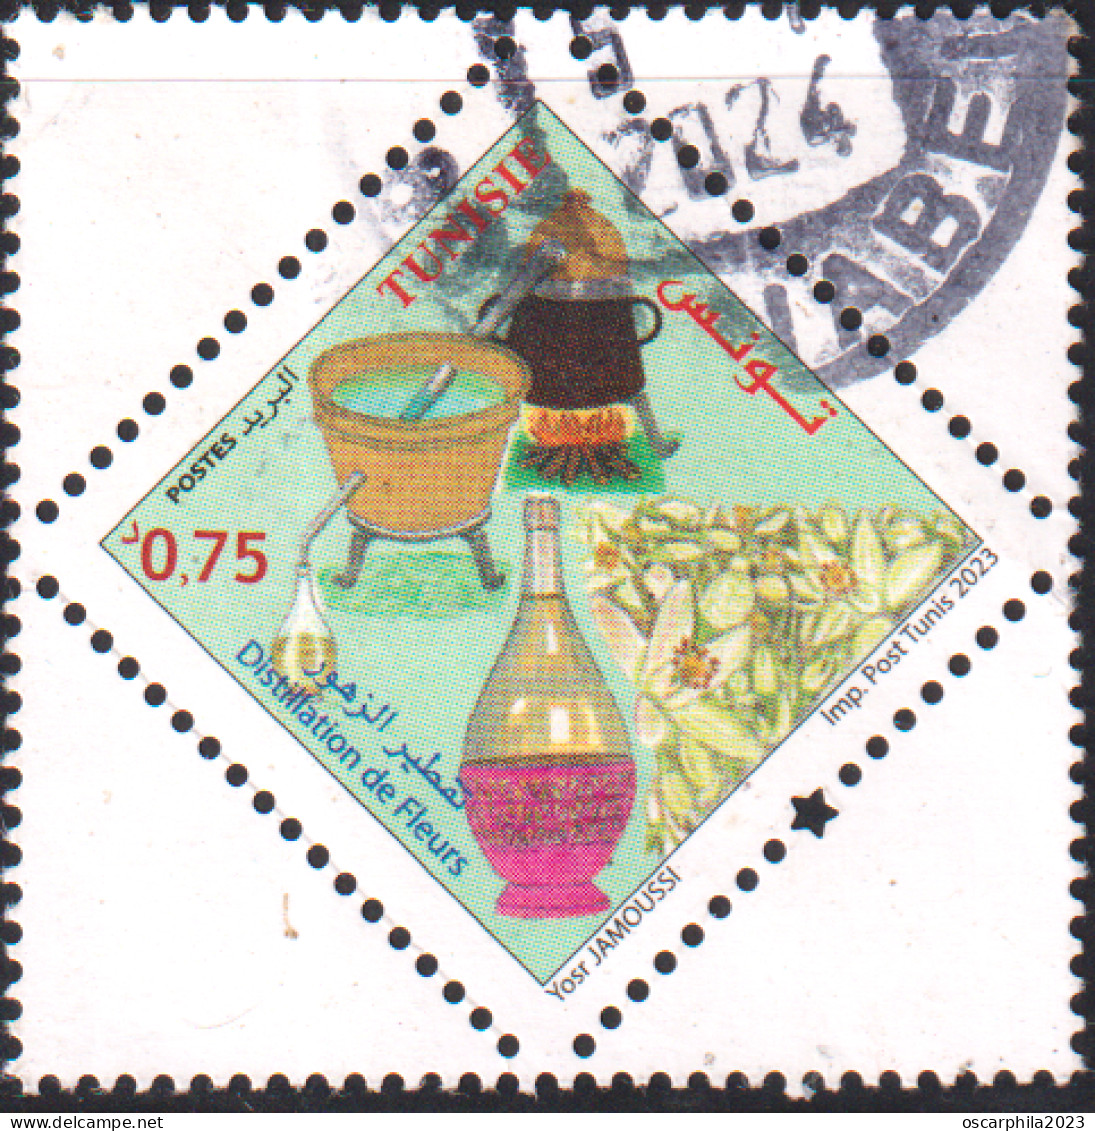 2023.emission N°3, Tunisie  - Distillation De Fleurs / Distillation Of Flowers - Obli - Tunisie (1956-...)